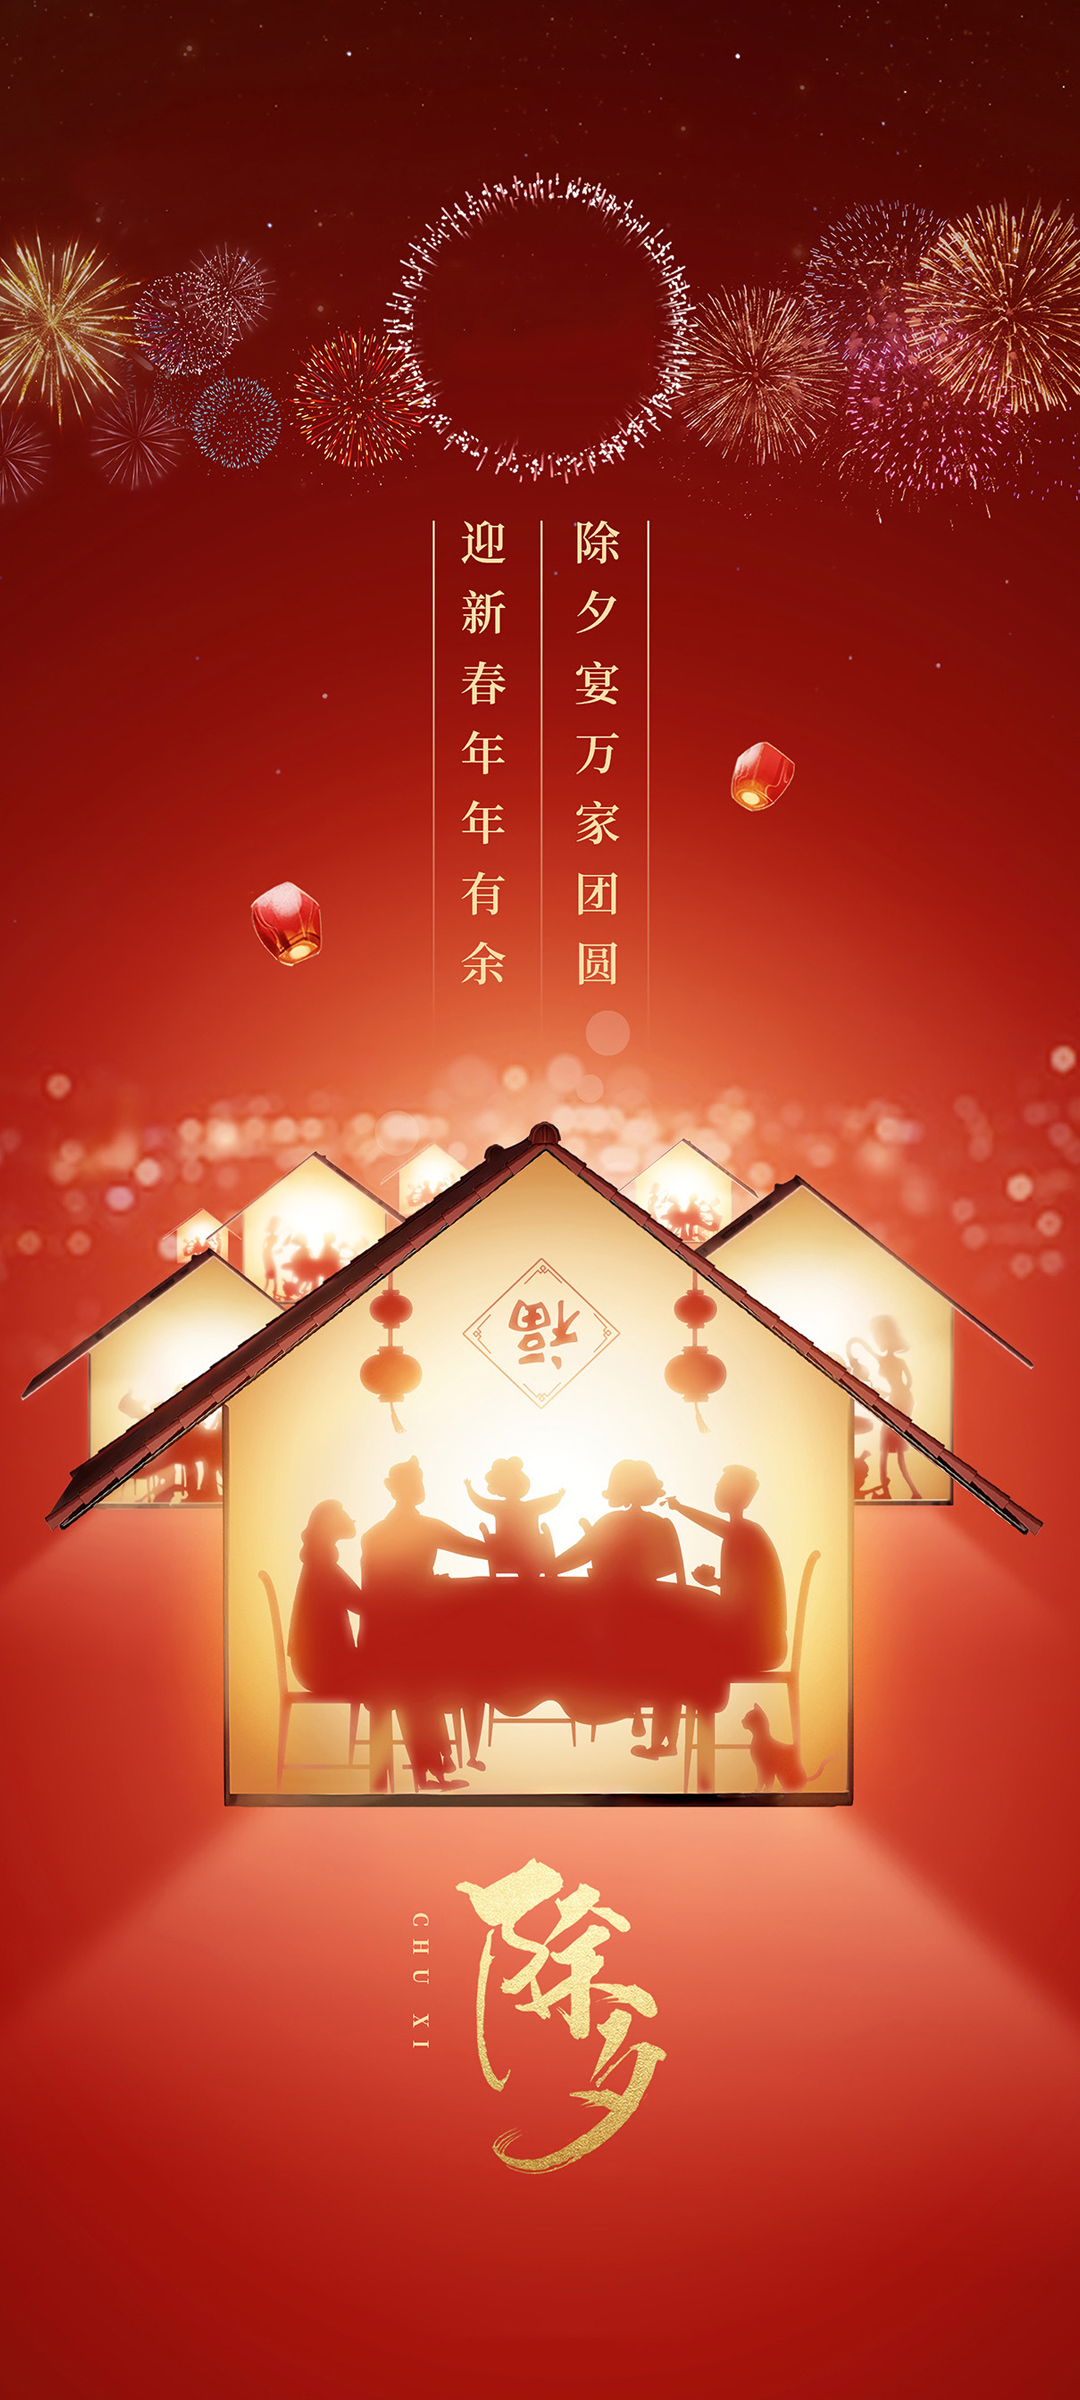 新年除夕中国风海报设计模板素材下载可商用